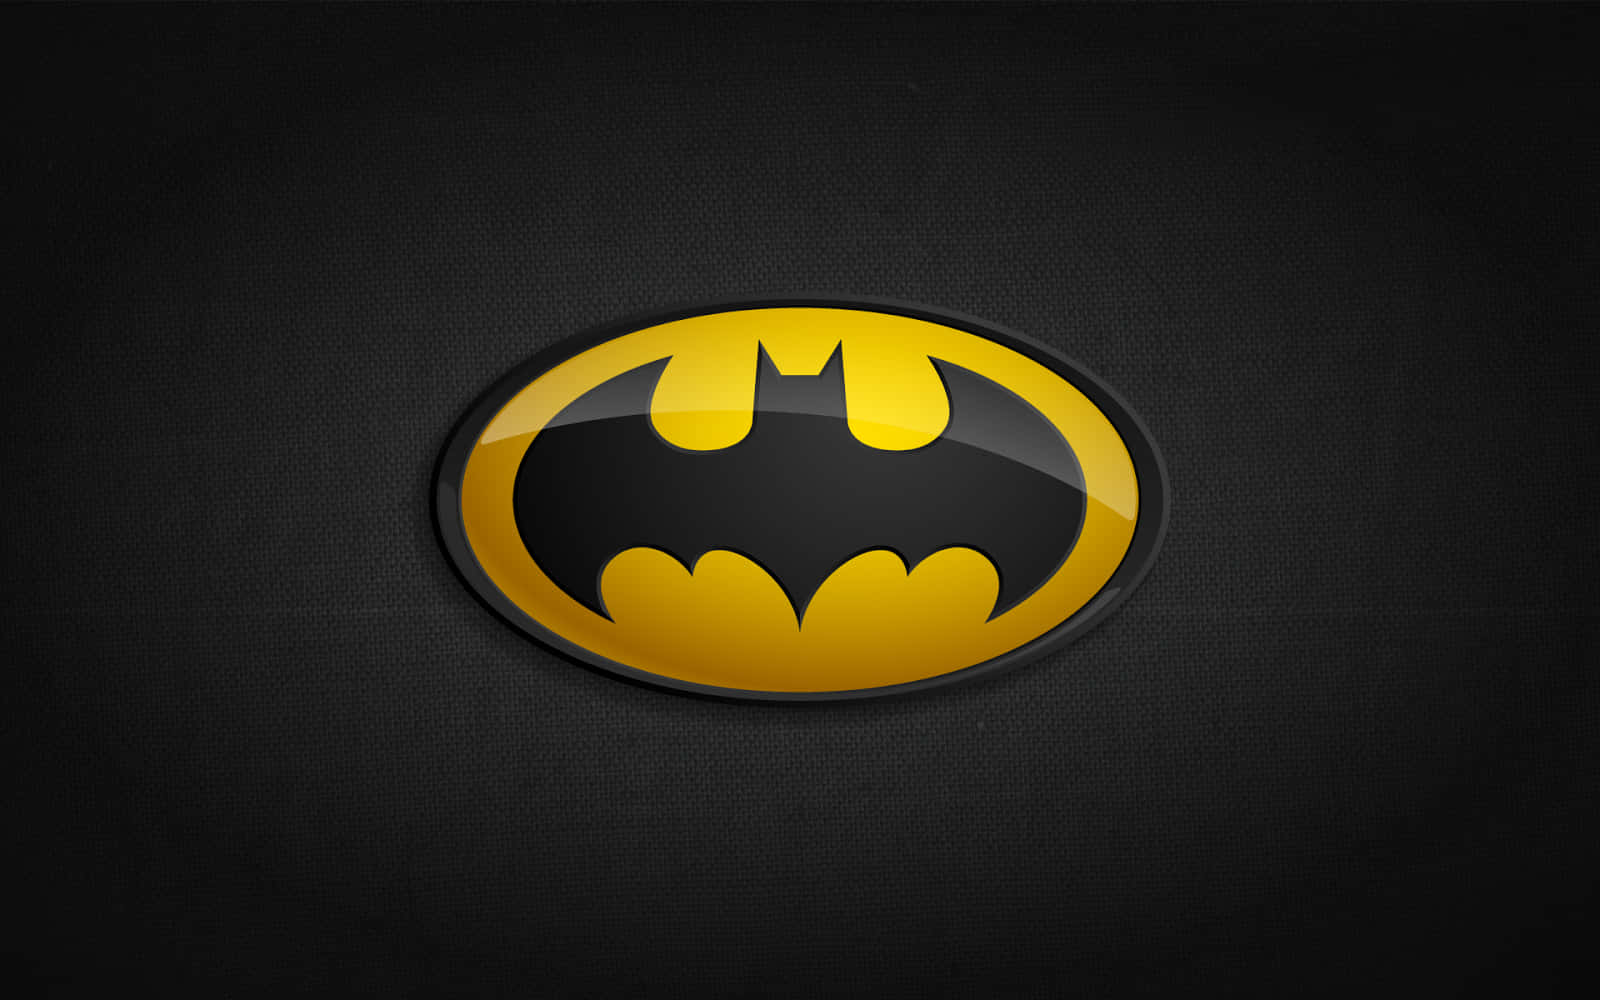 Baggrundenpå Din Bärbara Dator Eller Mobiltelefon Kan Förvandlas Till En Cool Batman-design Som Visar Din Inre Superhjälte. Wallpaper